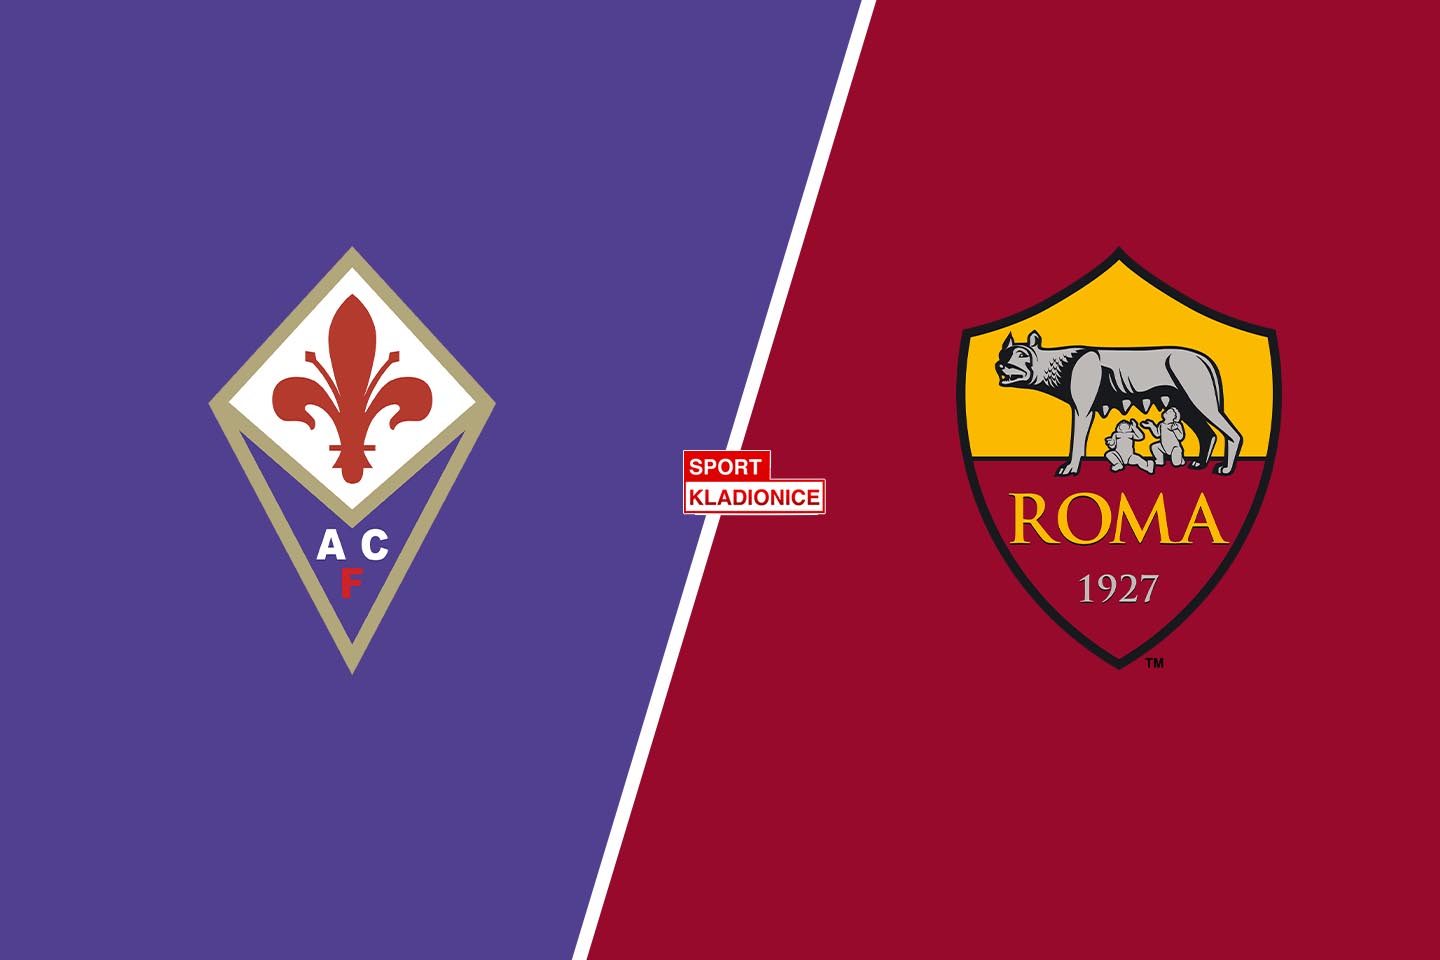 Fiorentina - AS Roma